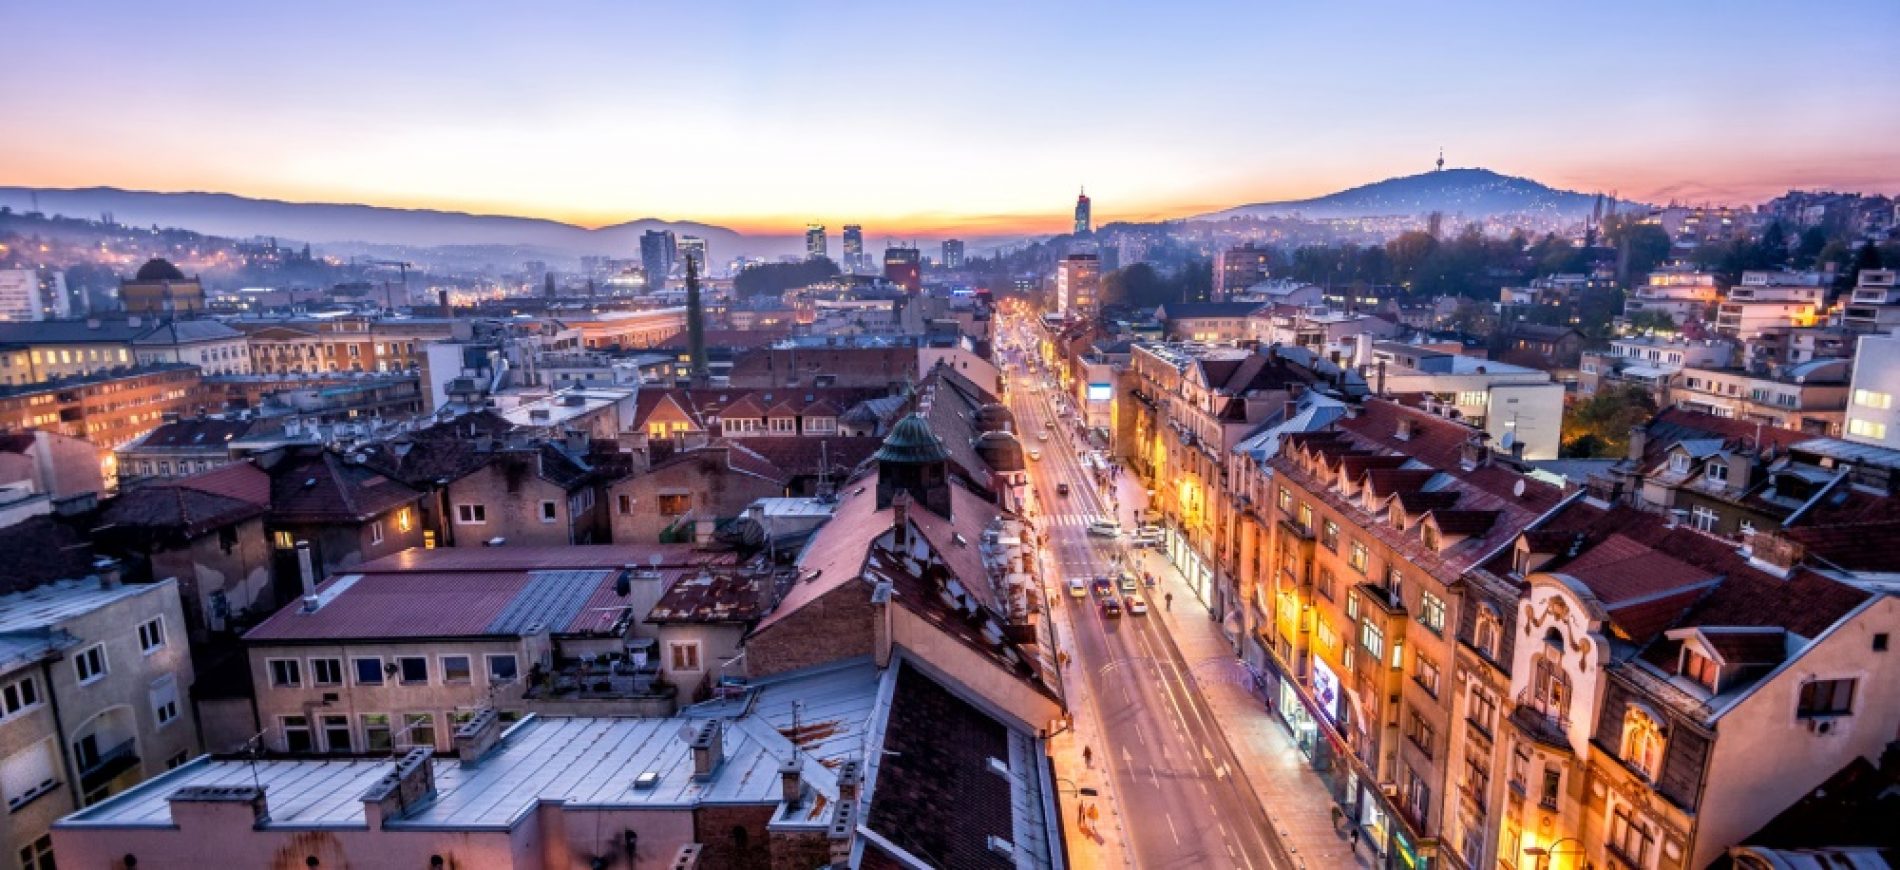 CENTAR JE CENTAR: Općina Centar Sarajevo najrazvijenija u Federaciji Bosne i Hercegovine